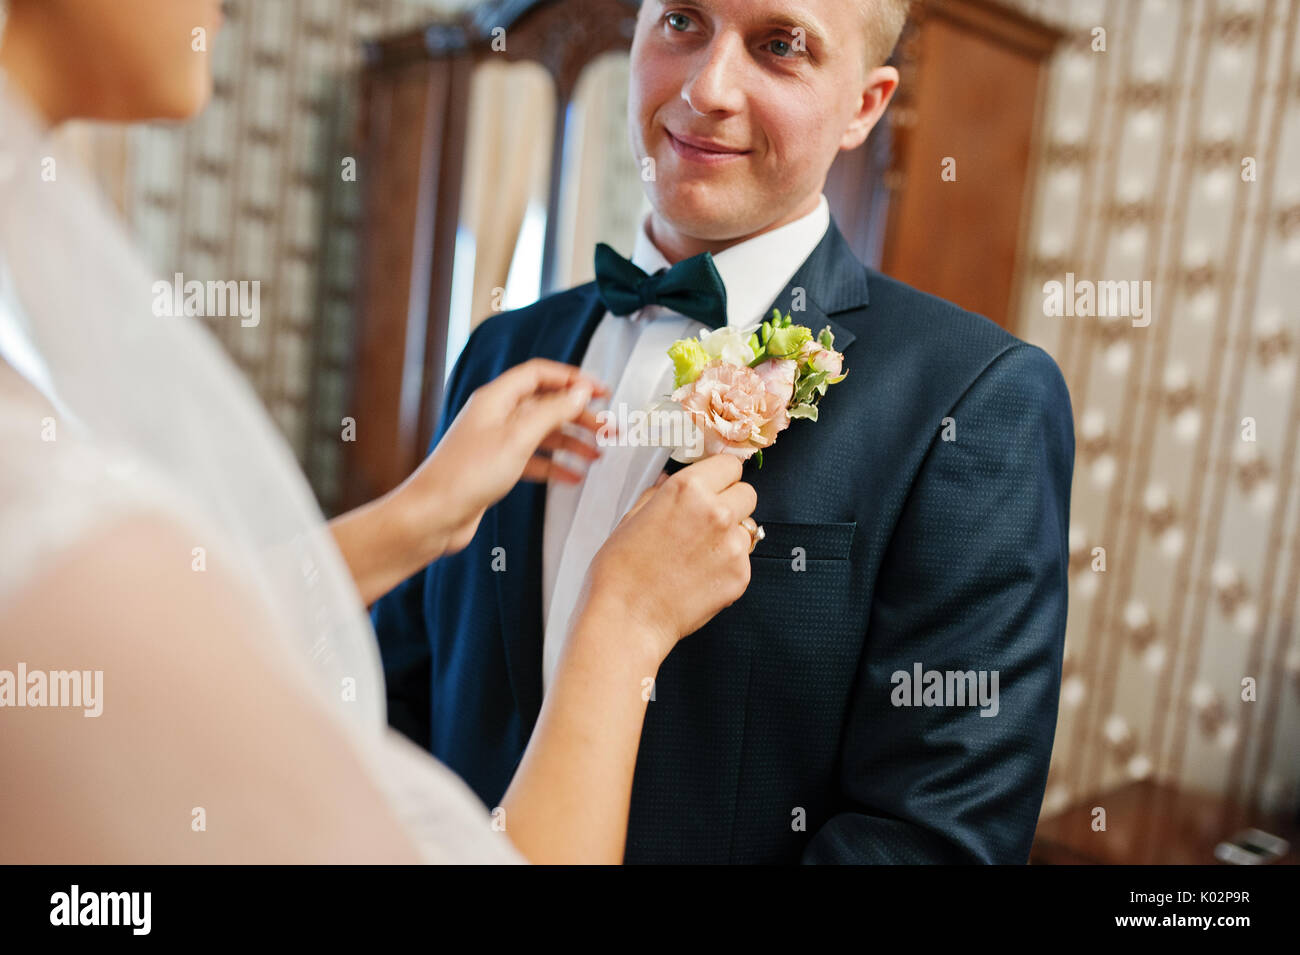 Attraktive Braut pinning Knopfloch Blume zu Jacke der Bräutigam am Hochzeitstag. Stockfoto